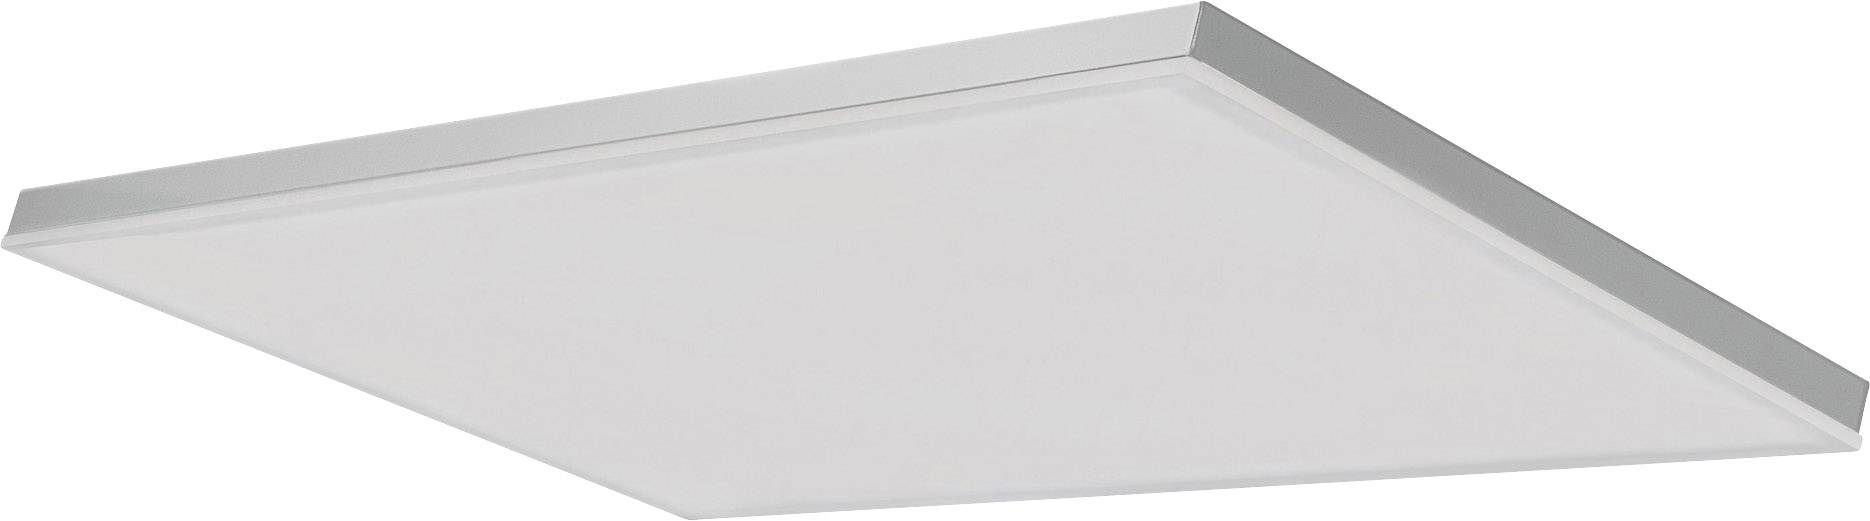 LEDVANCE SMART+ TUNABLE WHITE 600X300 4058075484412 LED-Deckenleuchte Weiß 28 W App steuerbar,